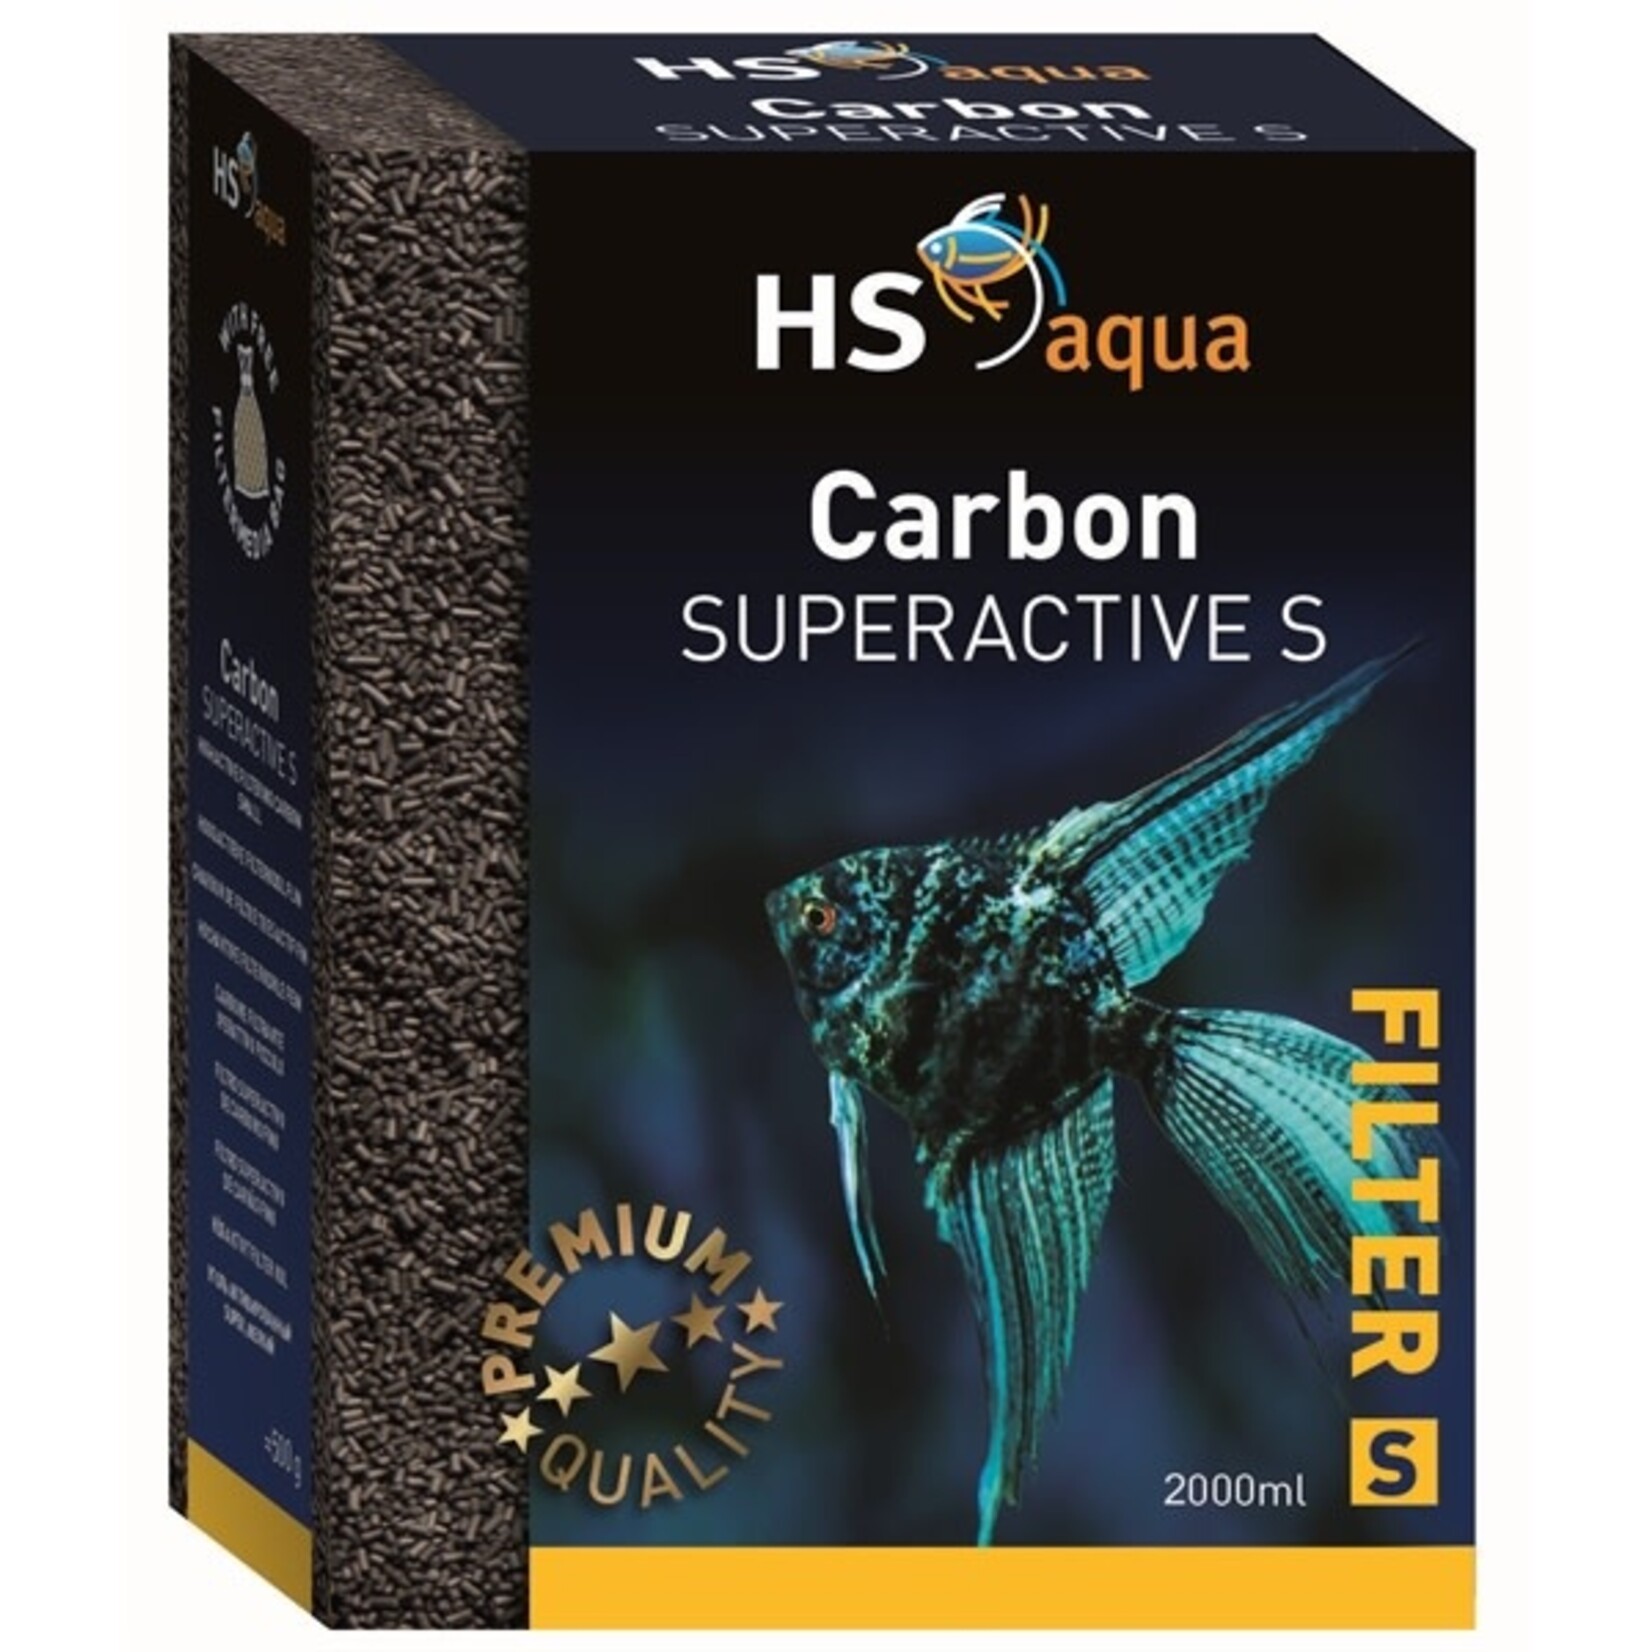 HS Aqua Carbon super active s 2 l/1000 g